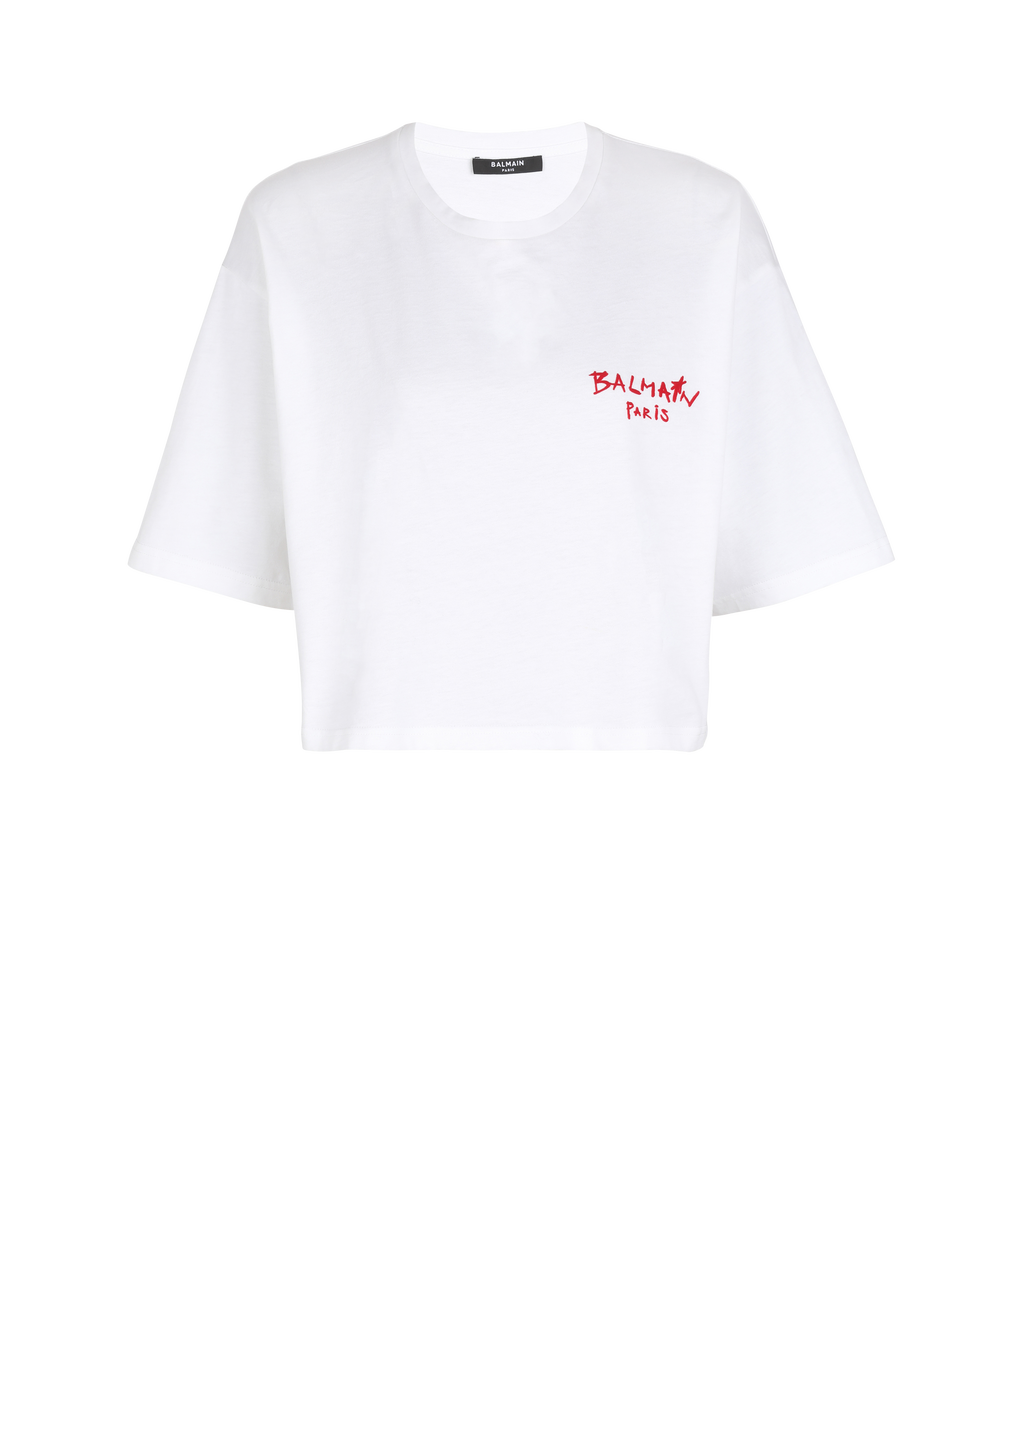 T-shirt corta in cotone con piccolo logo Balmain graffiti floccato, bianco, hi-res